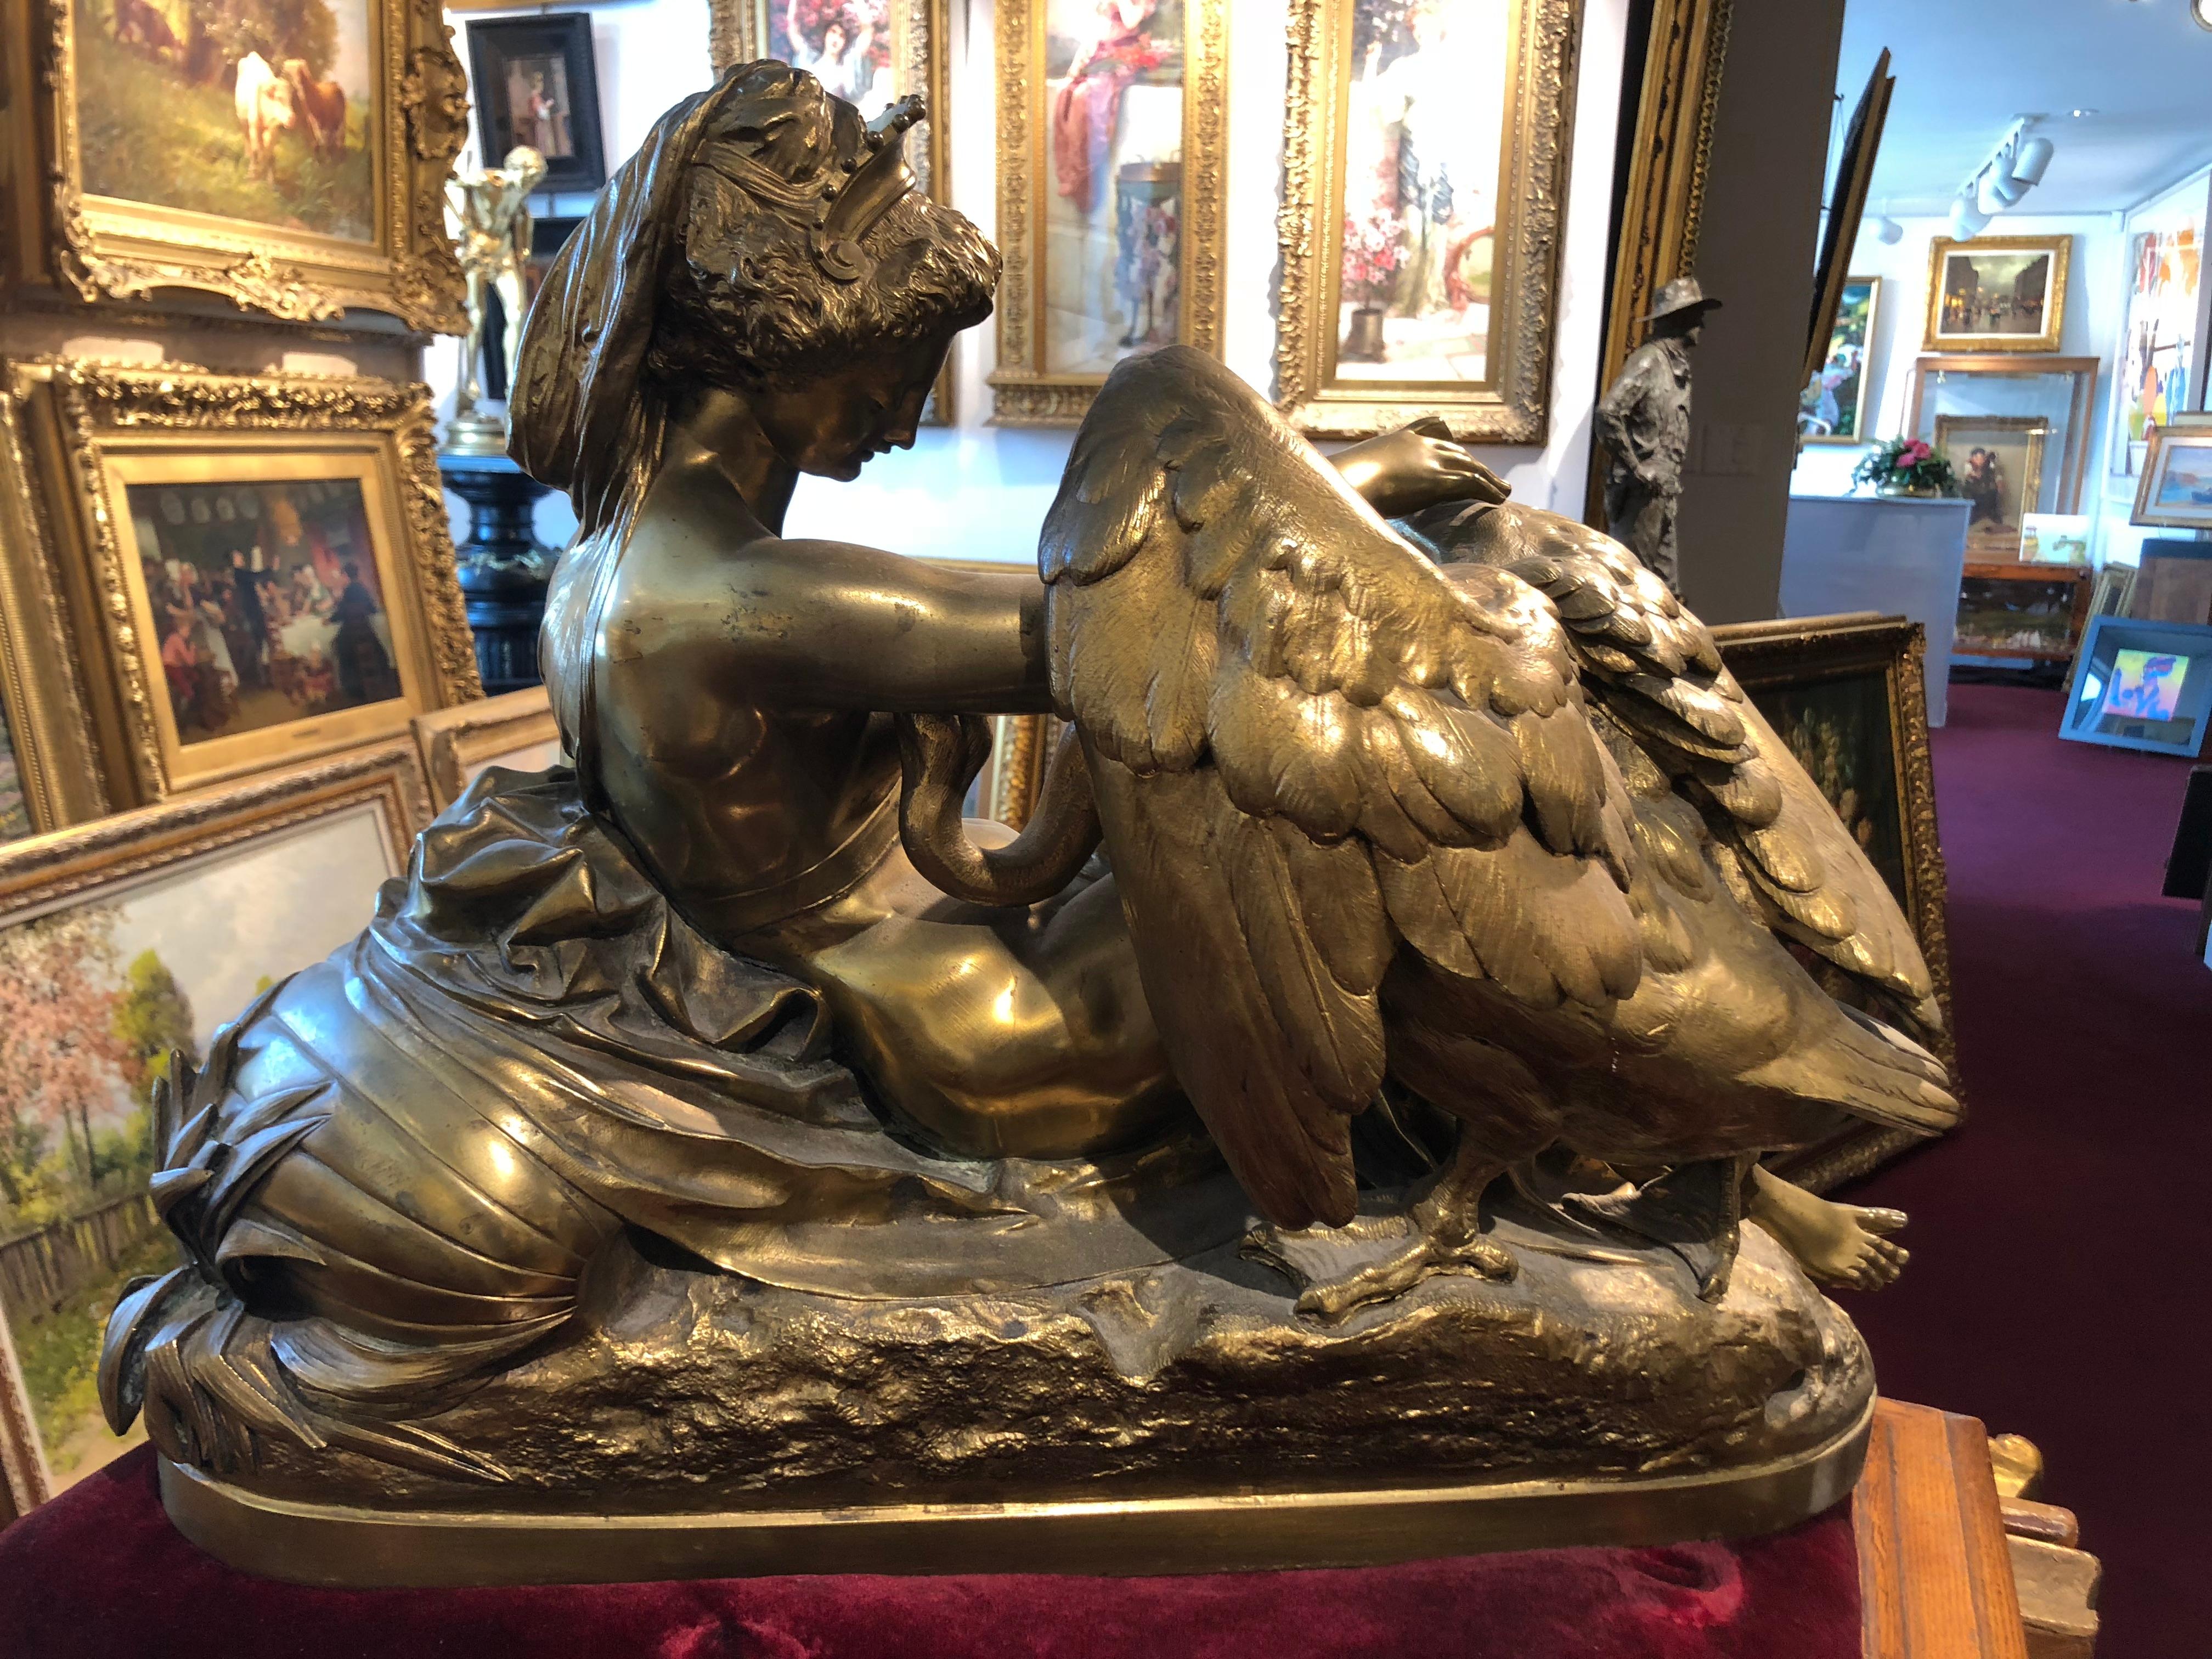 Leda et le cygne - Or Figurative Sculpture par Albert-Ernest Carrier-Belleuse